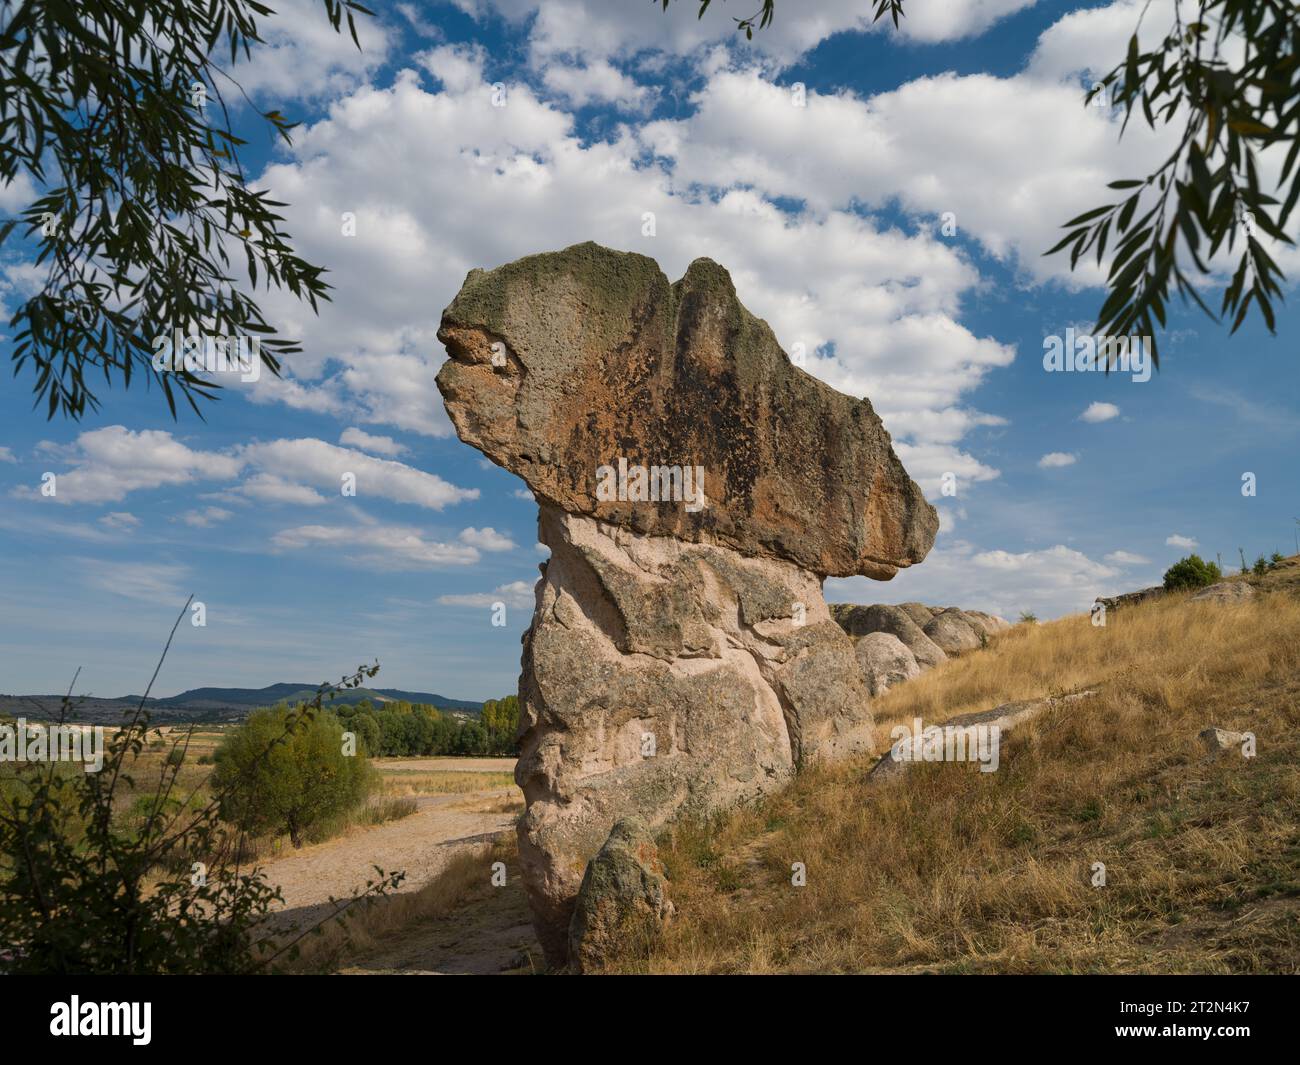 Historische Forty Treppen Rock und Phrygian Rock Chambers am Lake Emre. Phrygisches Tal. Reiseziele in der Türkei. Ihsaniye Bezirk, Afyonkarahisa Stockfoto